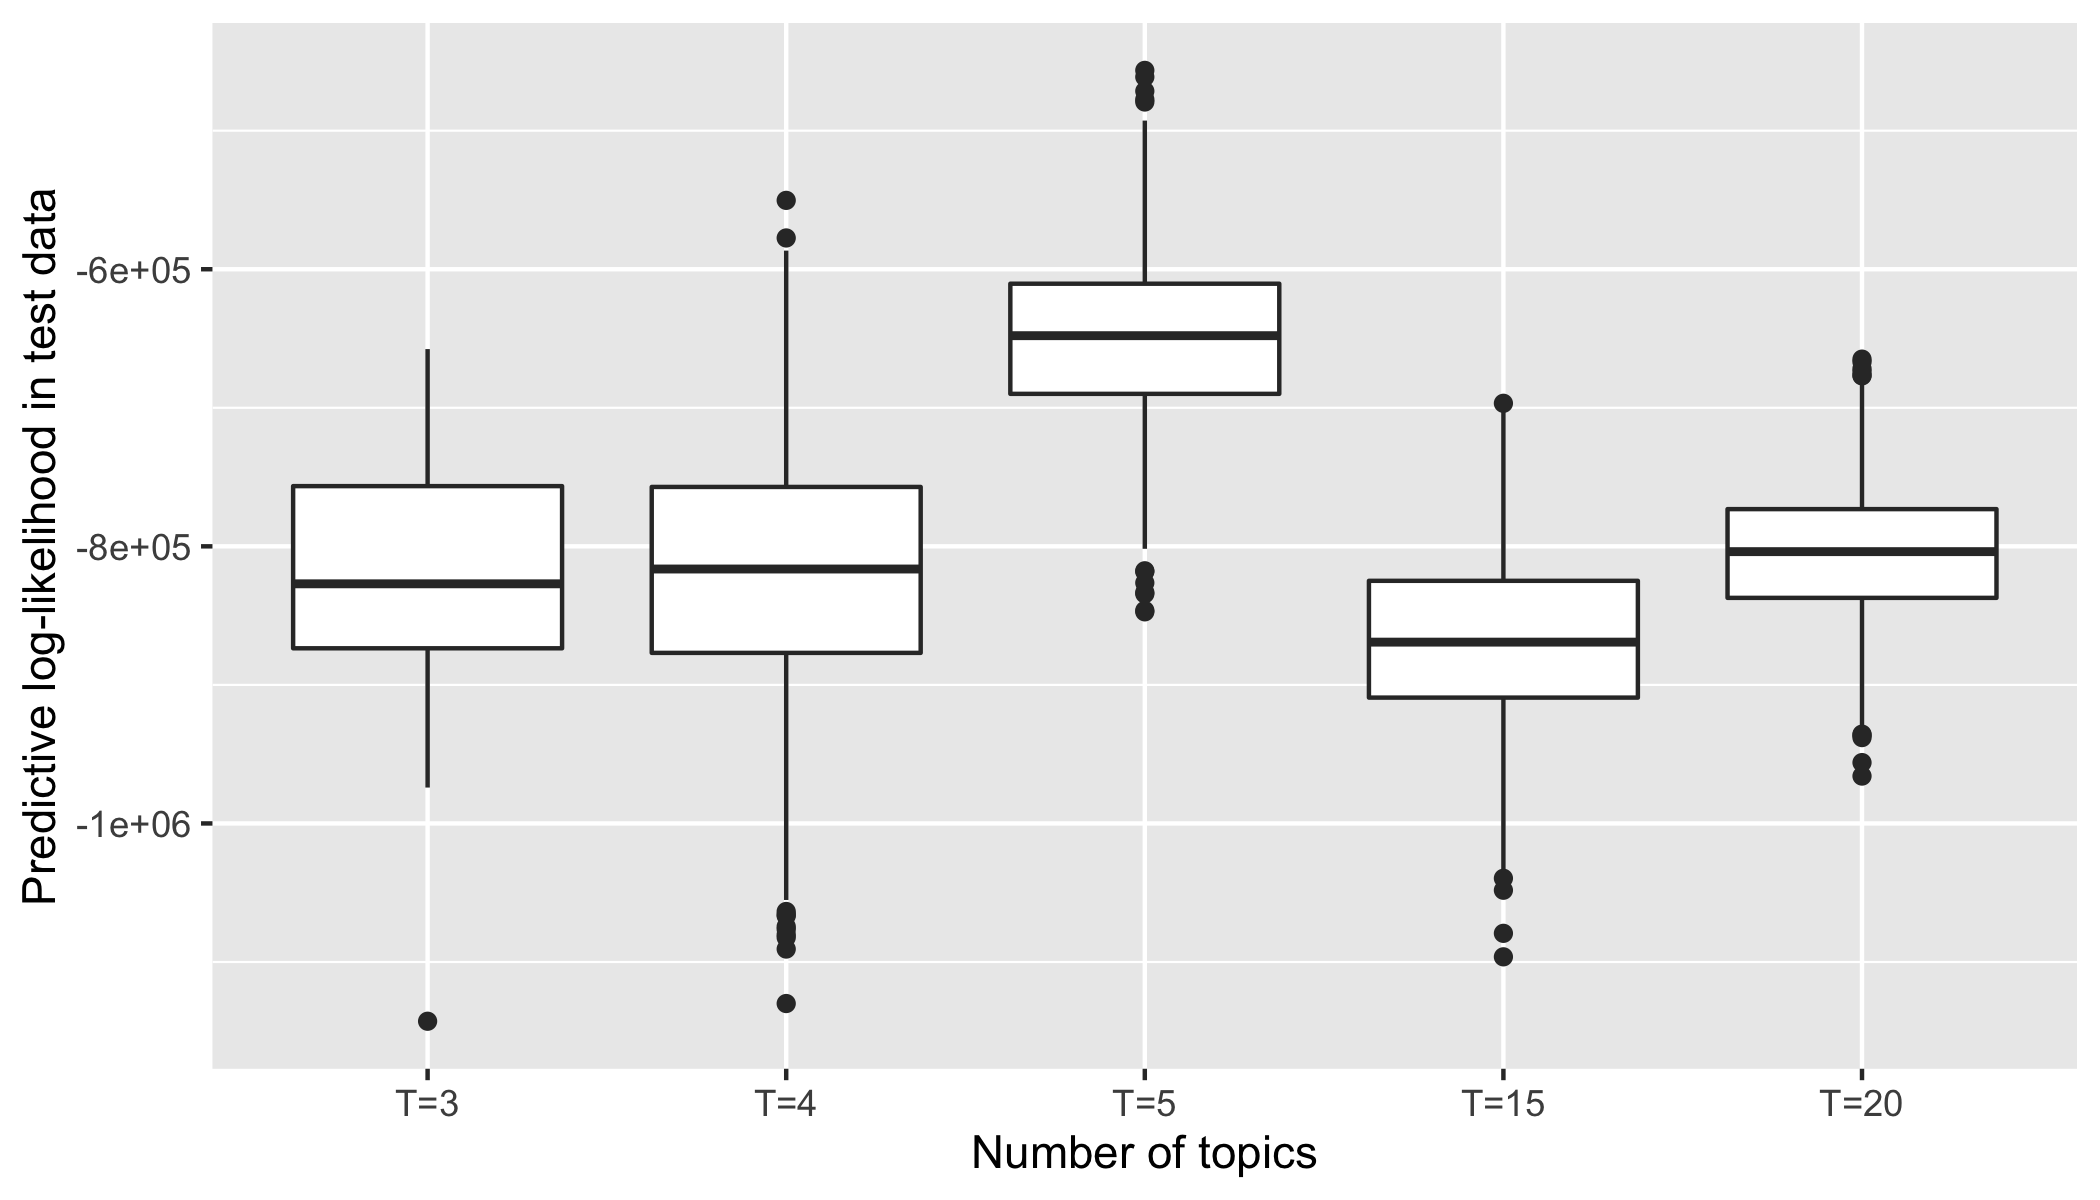 Posterior log-likelihood on test data.